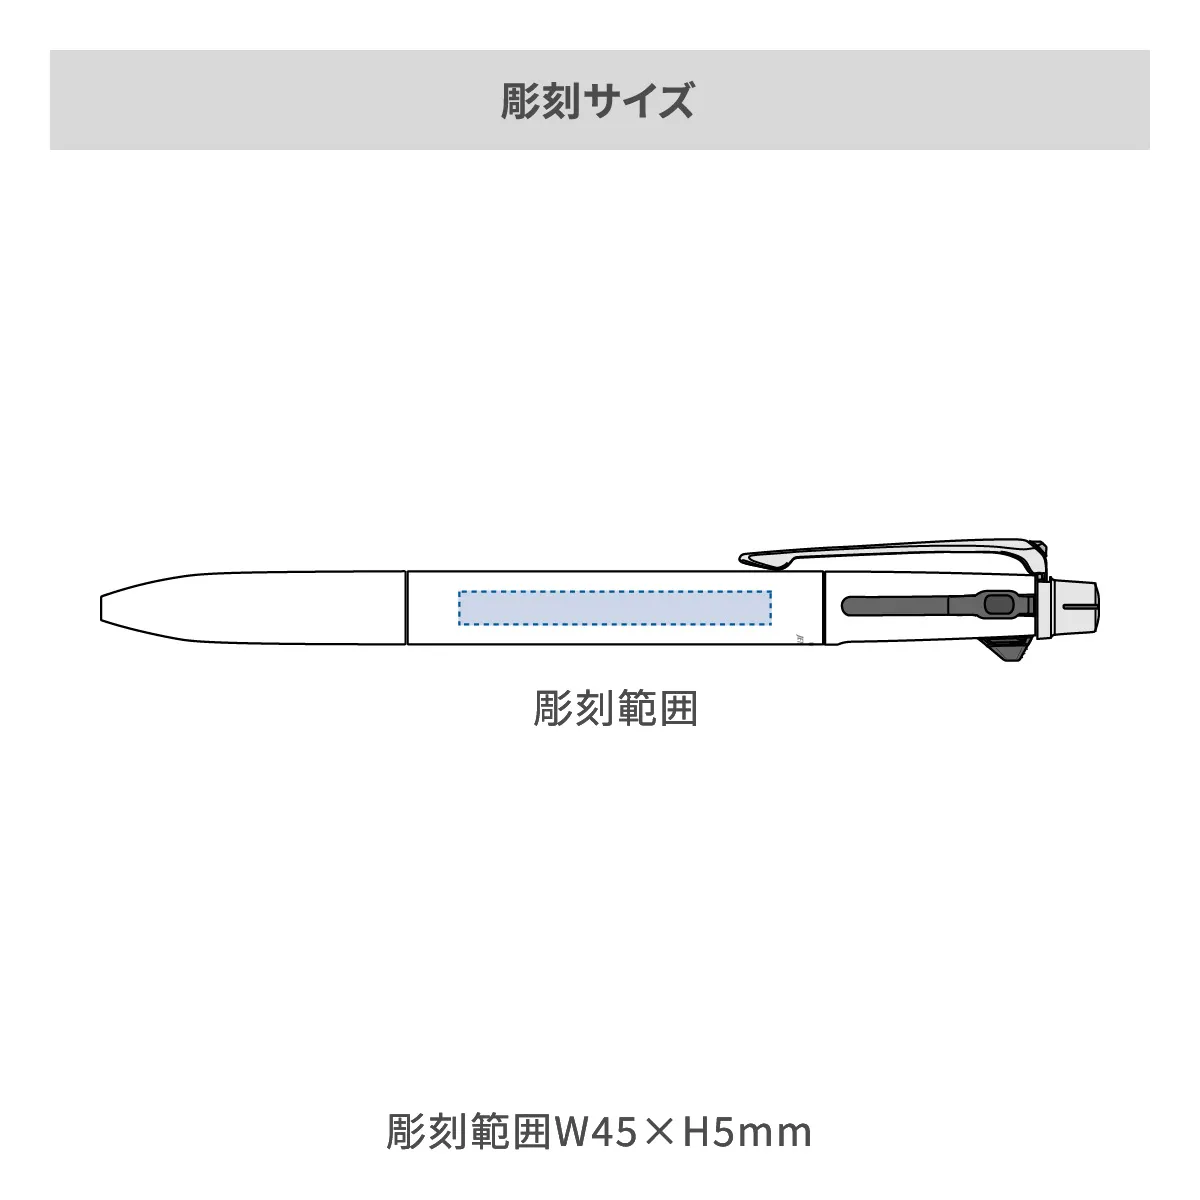 【短納期】三菱鉛筆 ジェットストリーム プライム 多機能ペン 2&1 0.7mm【多機能ペン / レーザー彫刻】 画像2